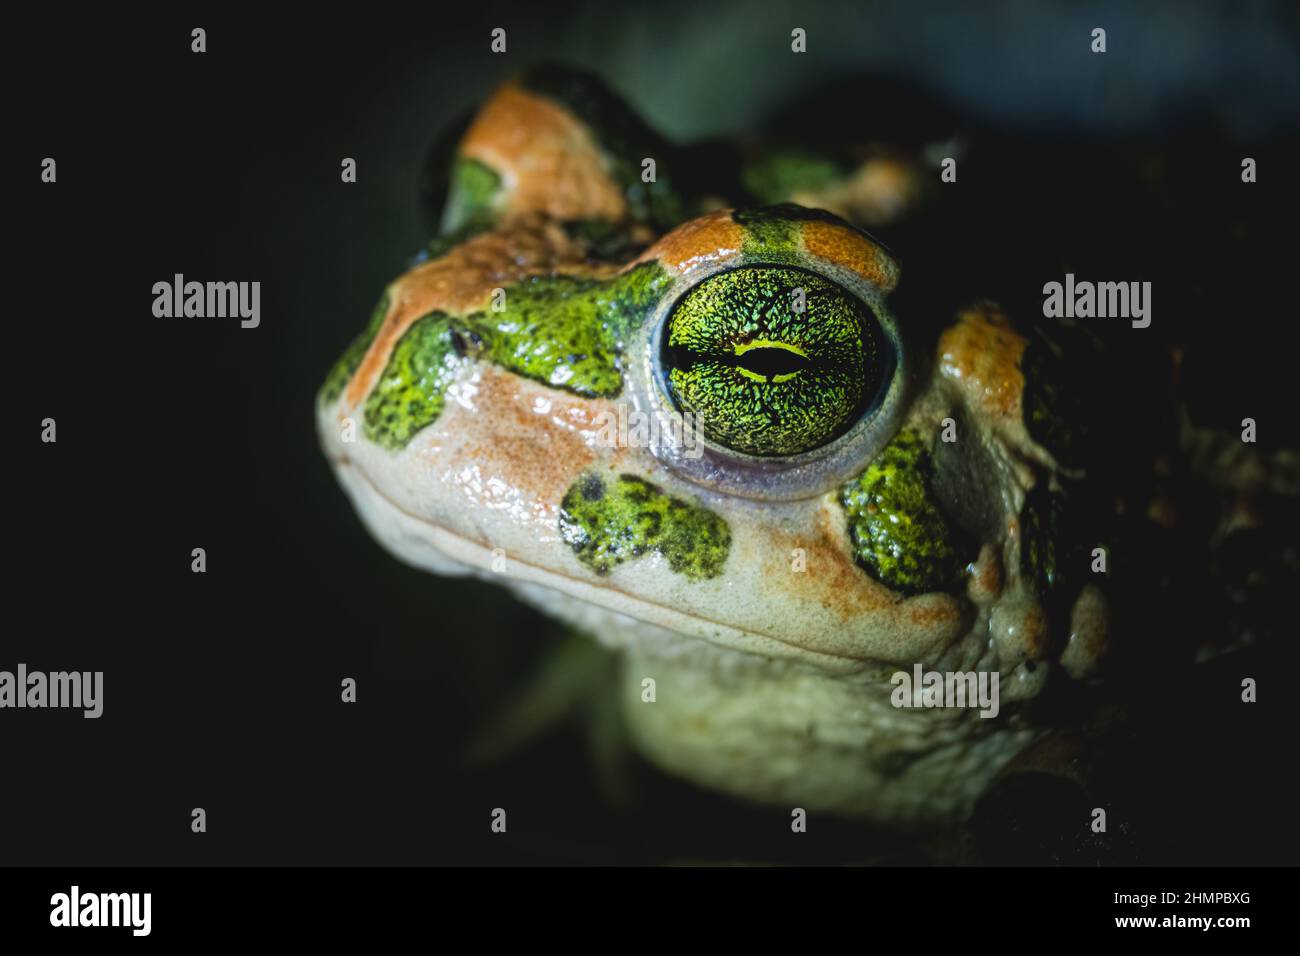 European green toad (Bufotes viridis) eye detail. Macro shot. Stock Photo